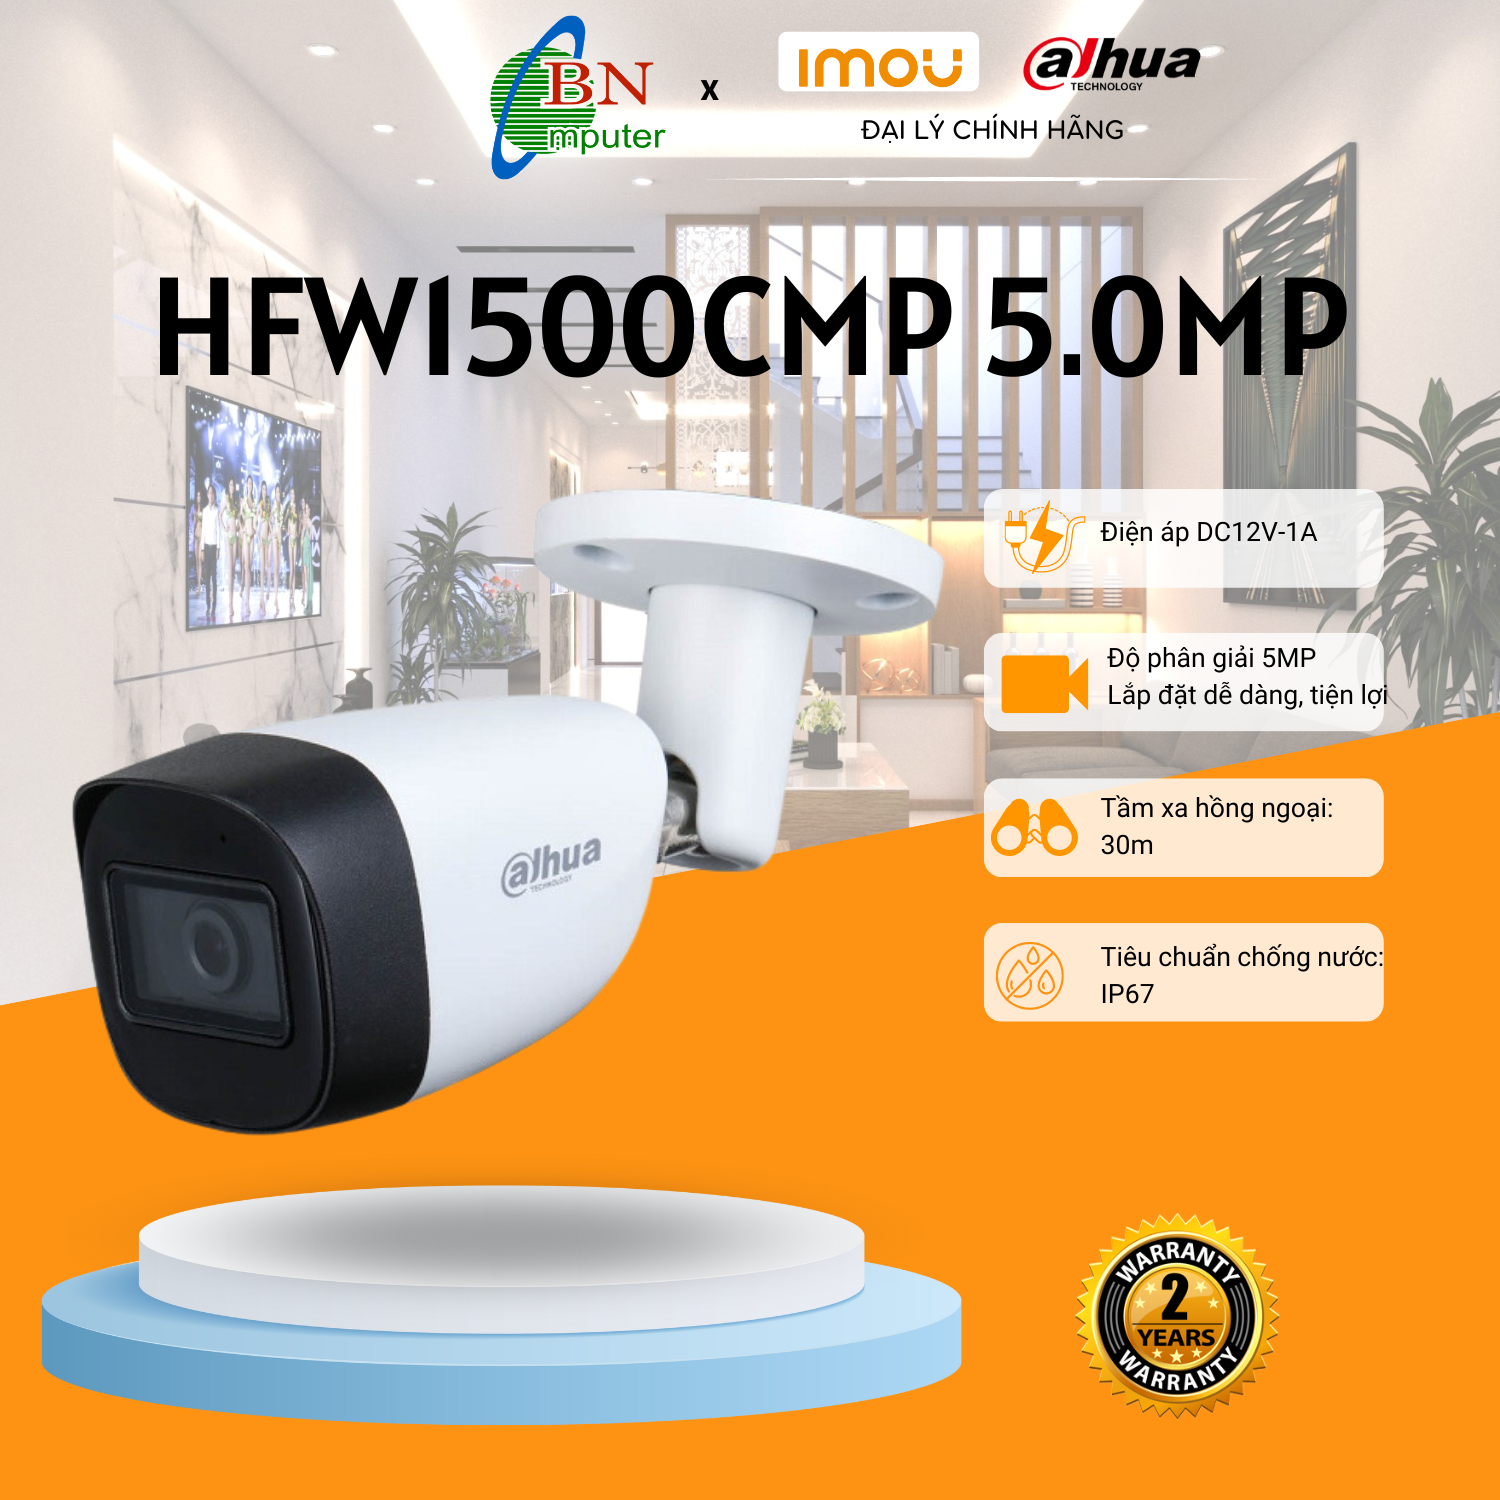 Camera quan sát Analog Dahua HFW 1500CMP 5.0MP dạng thân, IP67